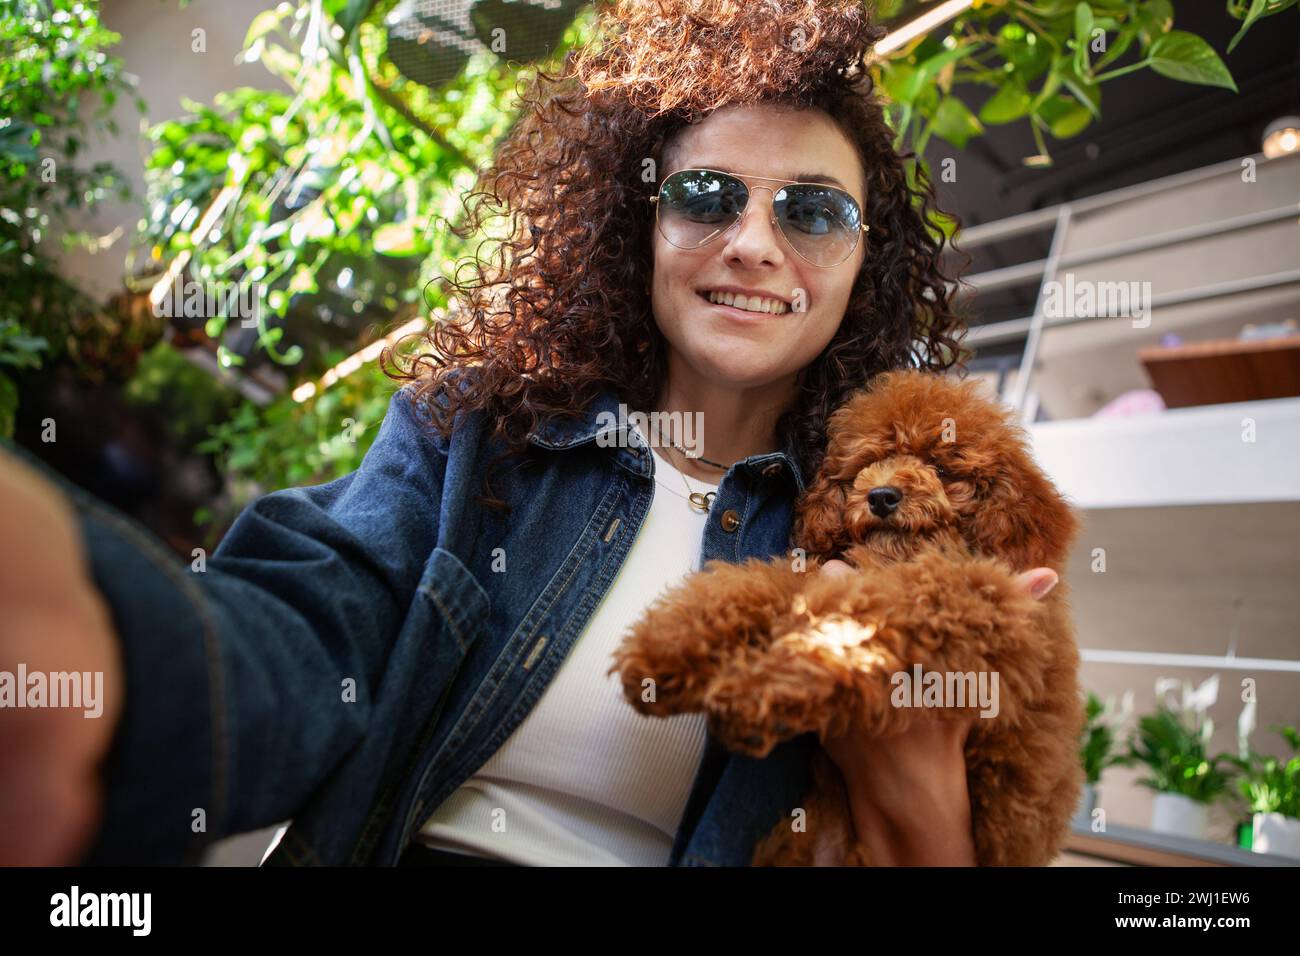 Selfie donna bruna ritratto con capelli ricci che tiene un piccolo cane marrone e sorride all'interno. Una vera donna felice con un animale domestico. Foto Stock